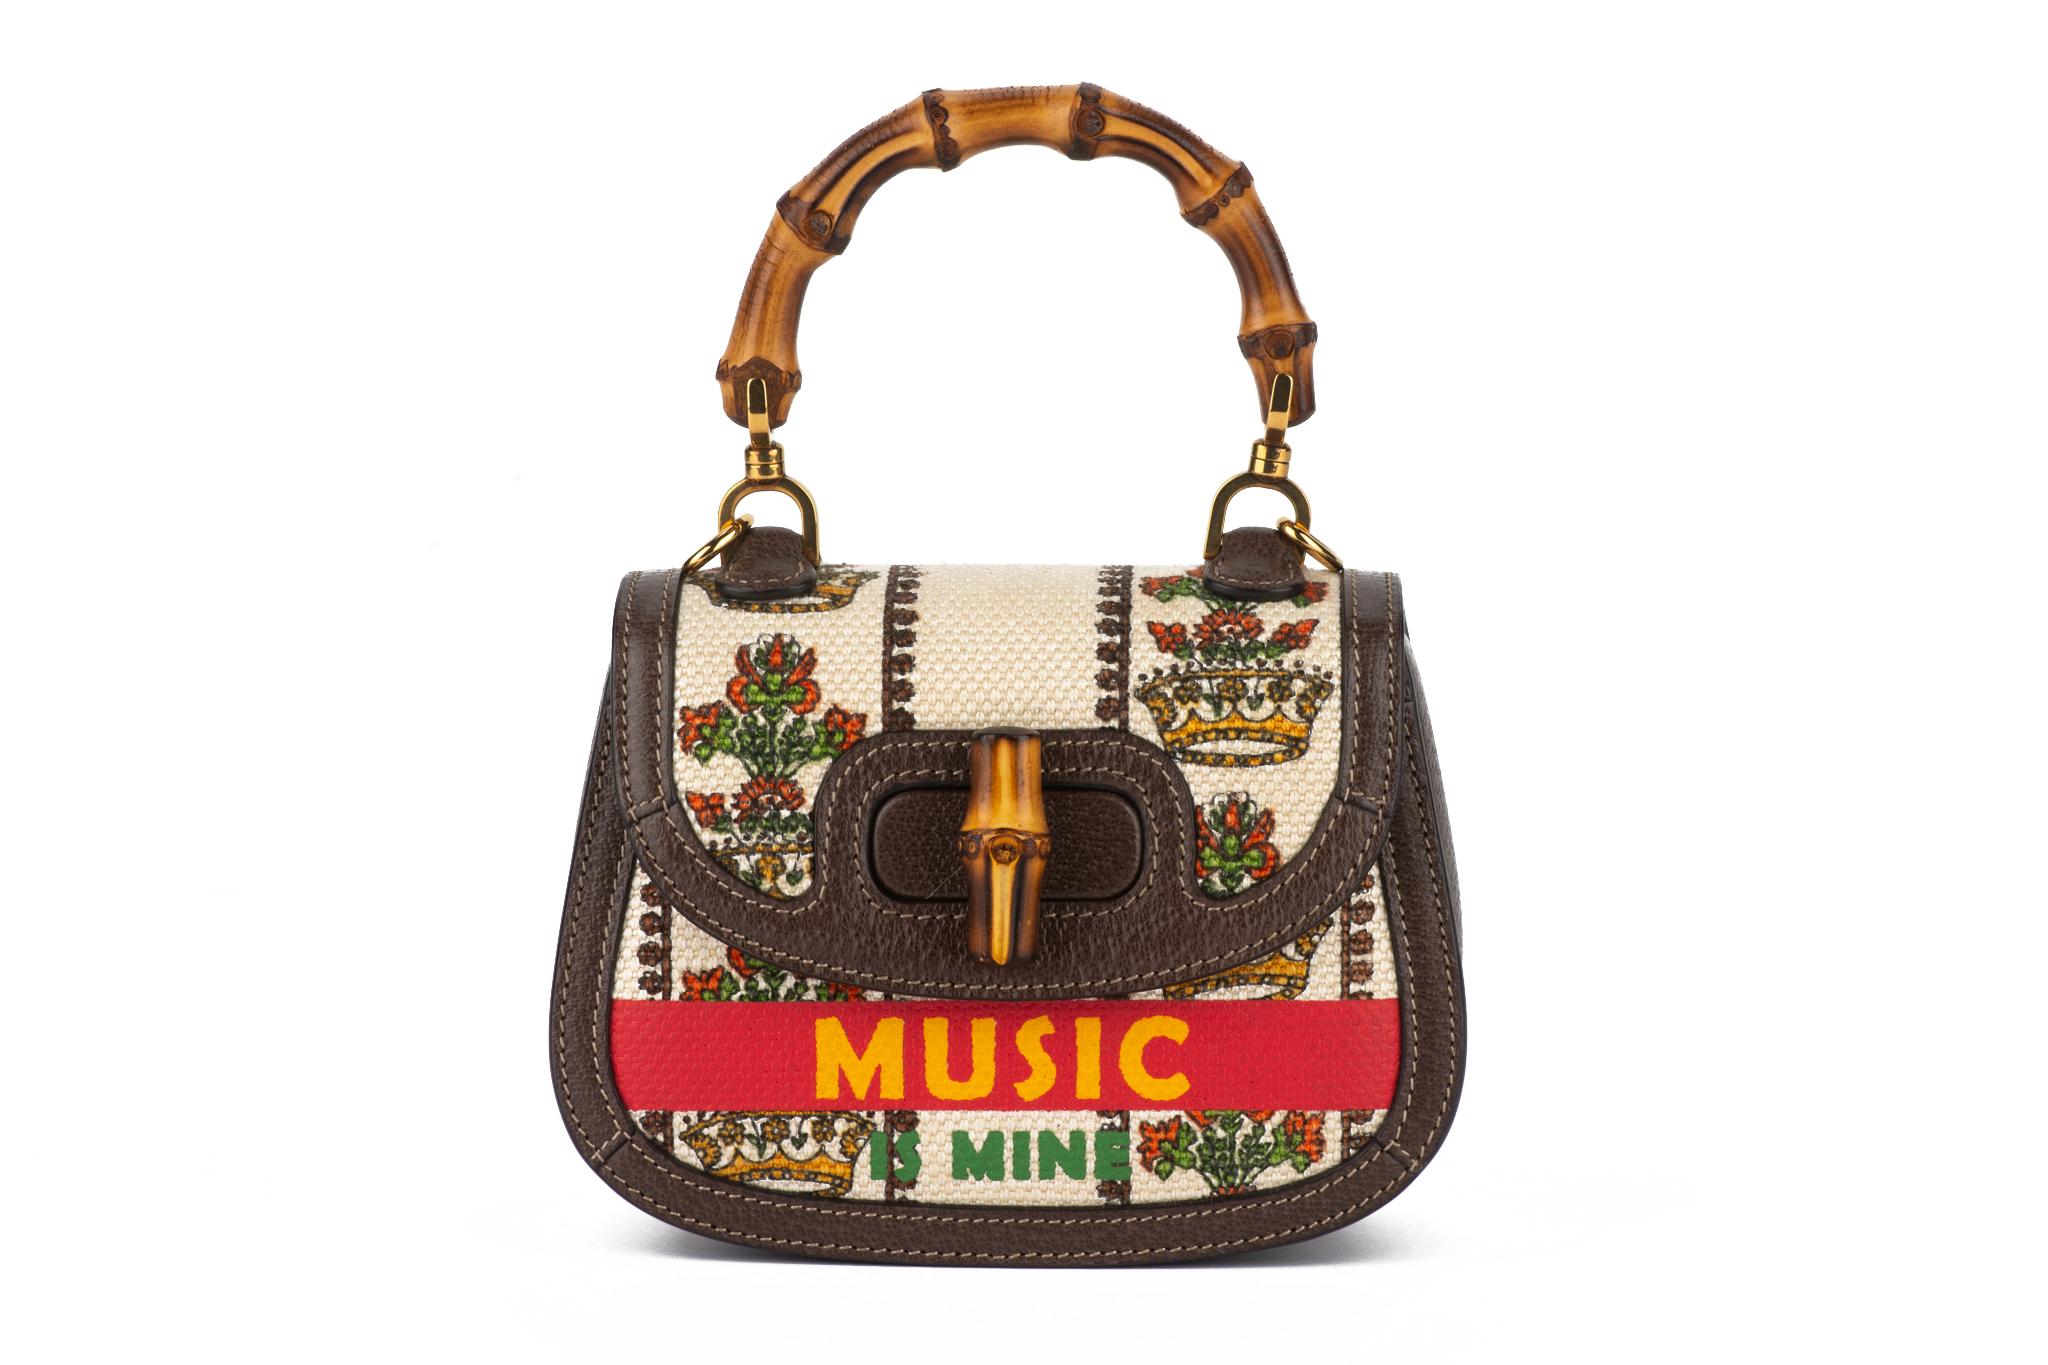 Gucci new limited edition 100 anniversary music mini bamboo 1947 bag. Toile imprimée et détails en cuir chocolat, détails iconiques en bambou .
Poignée de 3